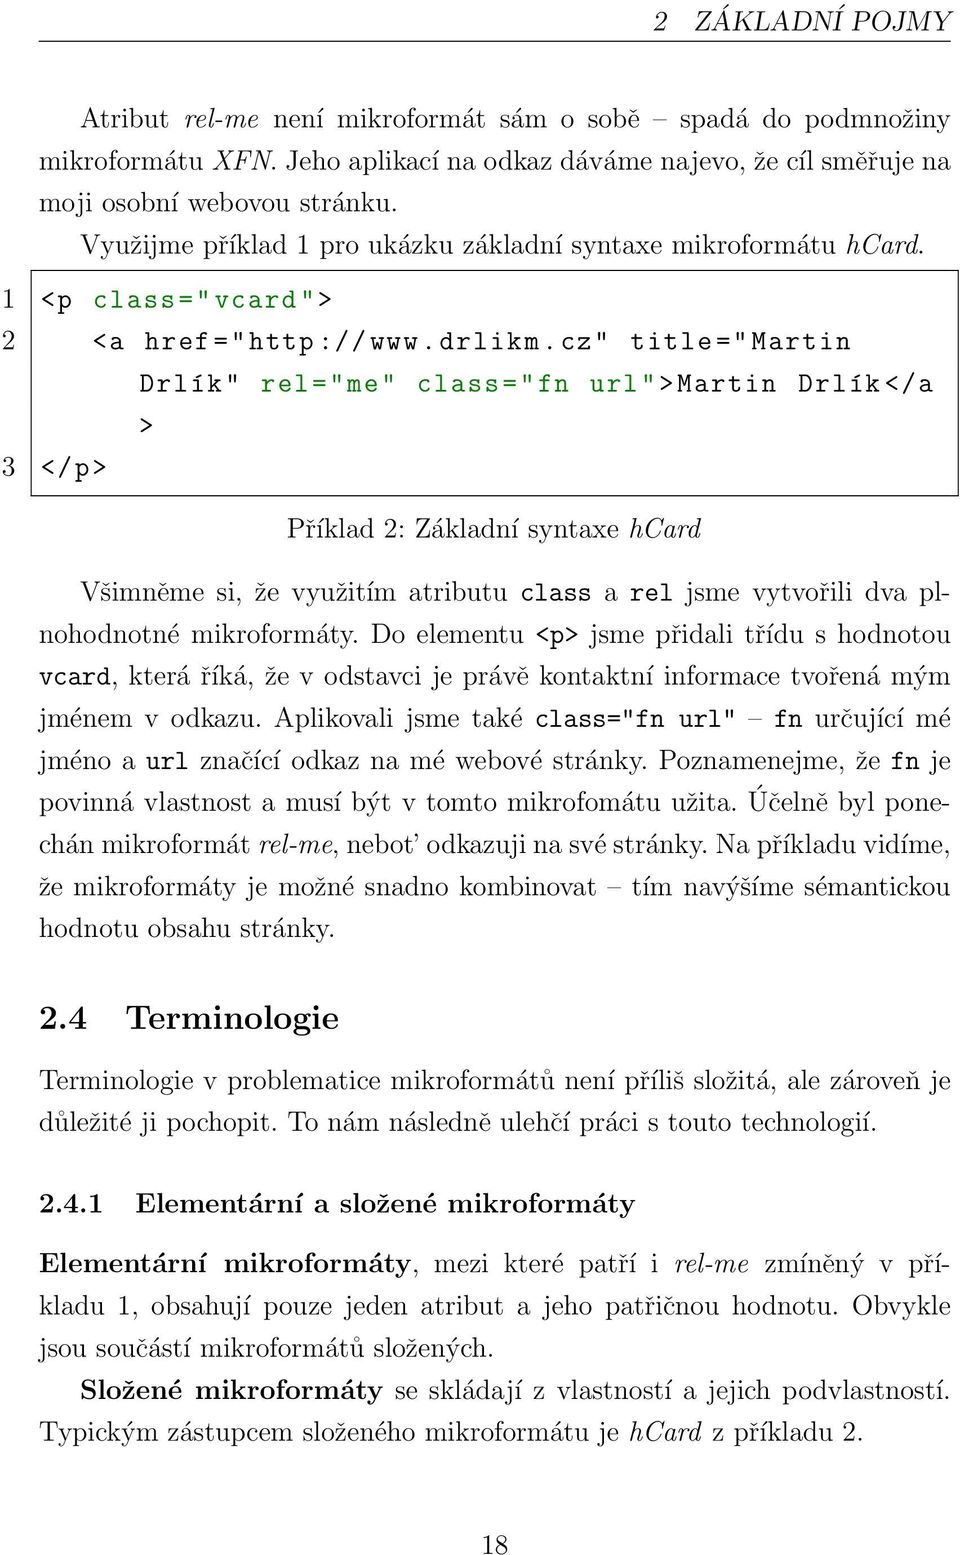 cz" title =" Martin Drlík " rel ="me" class ="fn url ">Martin Drlík </a > 3 </p> Příklad 2: Základní syntaxe hcard Všimněme si, že využitím atributu class a rel jsme vytvořili dva plnohodnotné